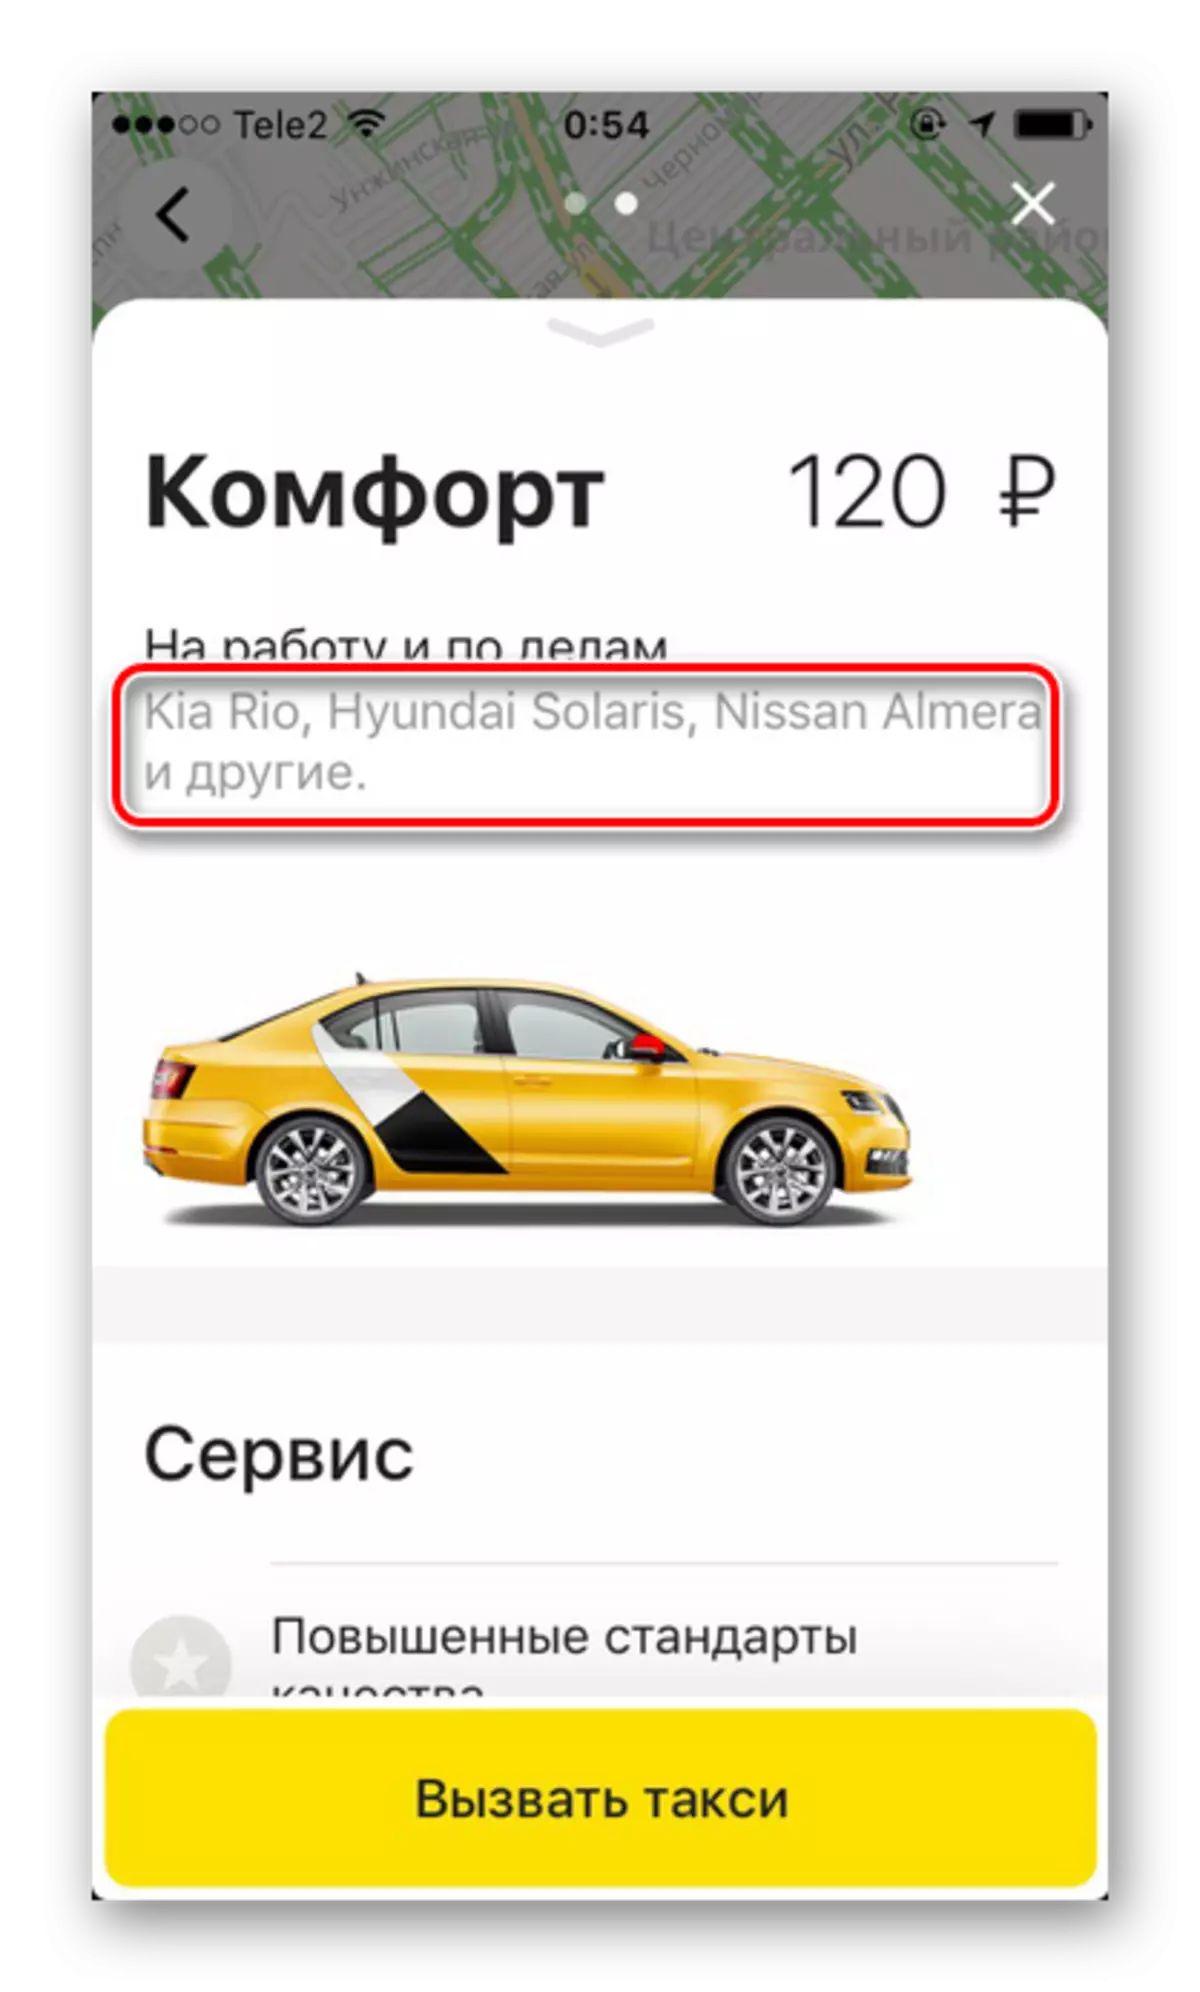 Brandiau peiriant yn y cysur tariff yn y cais Yandex.taxi ar yr iPhone